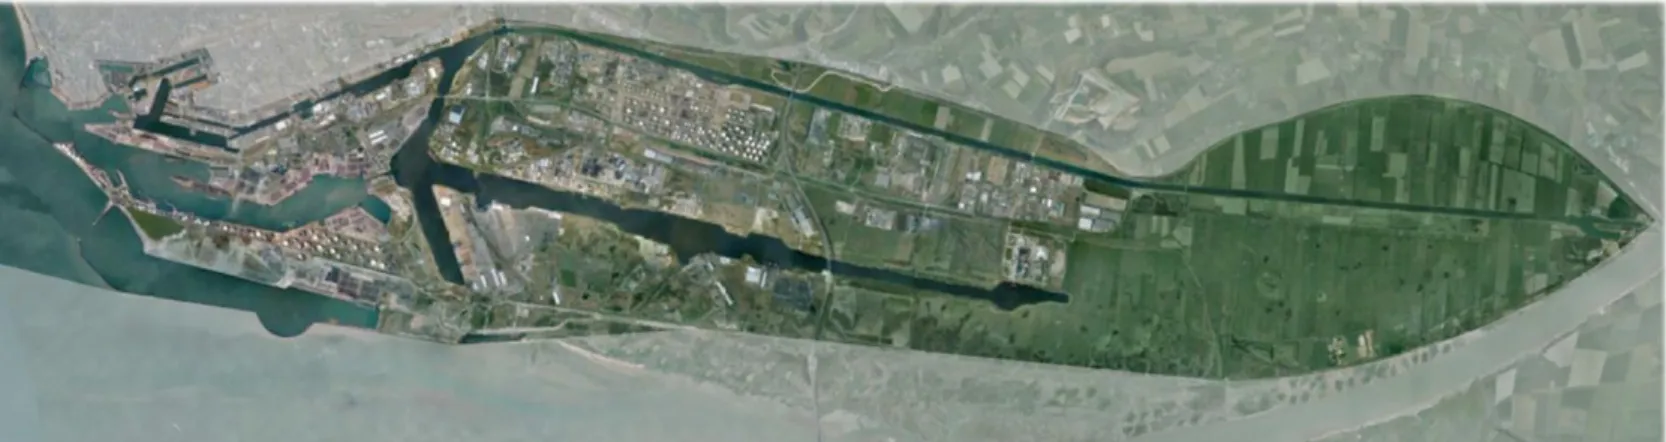 Figure 1 : Espace portuaire du GPMH – Source : orthophotographie de 2014 de la base de données du service SIGU-Topographie